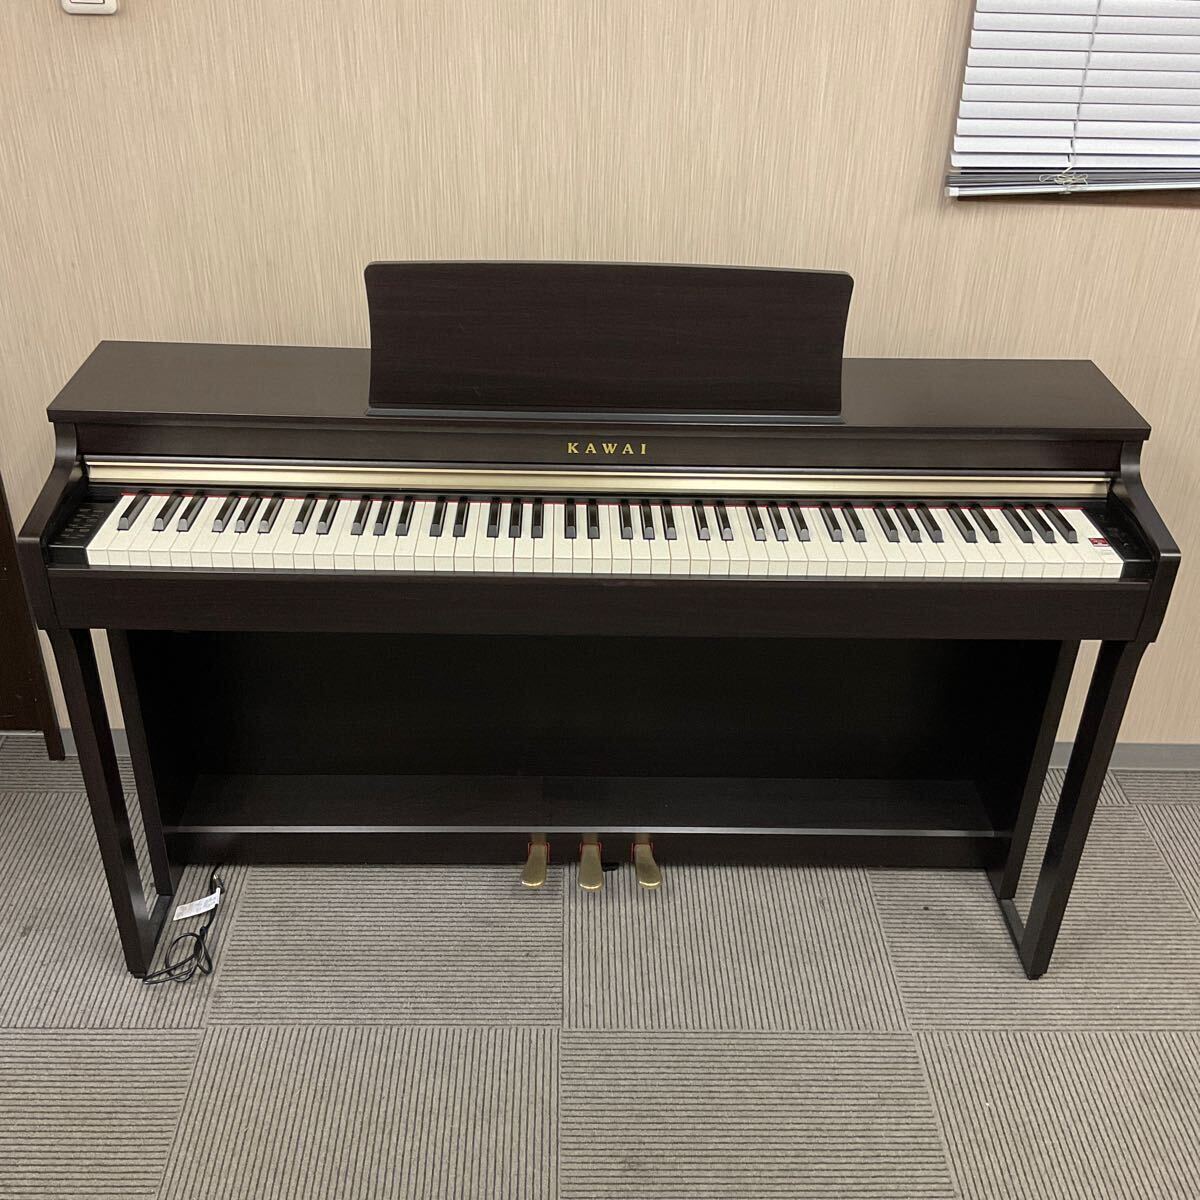 .YY31- дом DY KAWAI Kawai электронное пианино CN27 2018 год производства 88 клавиатура стул есть инструкция по эксплуатации есть электризация рабочее состояние подтверждено 